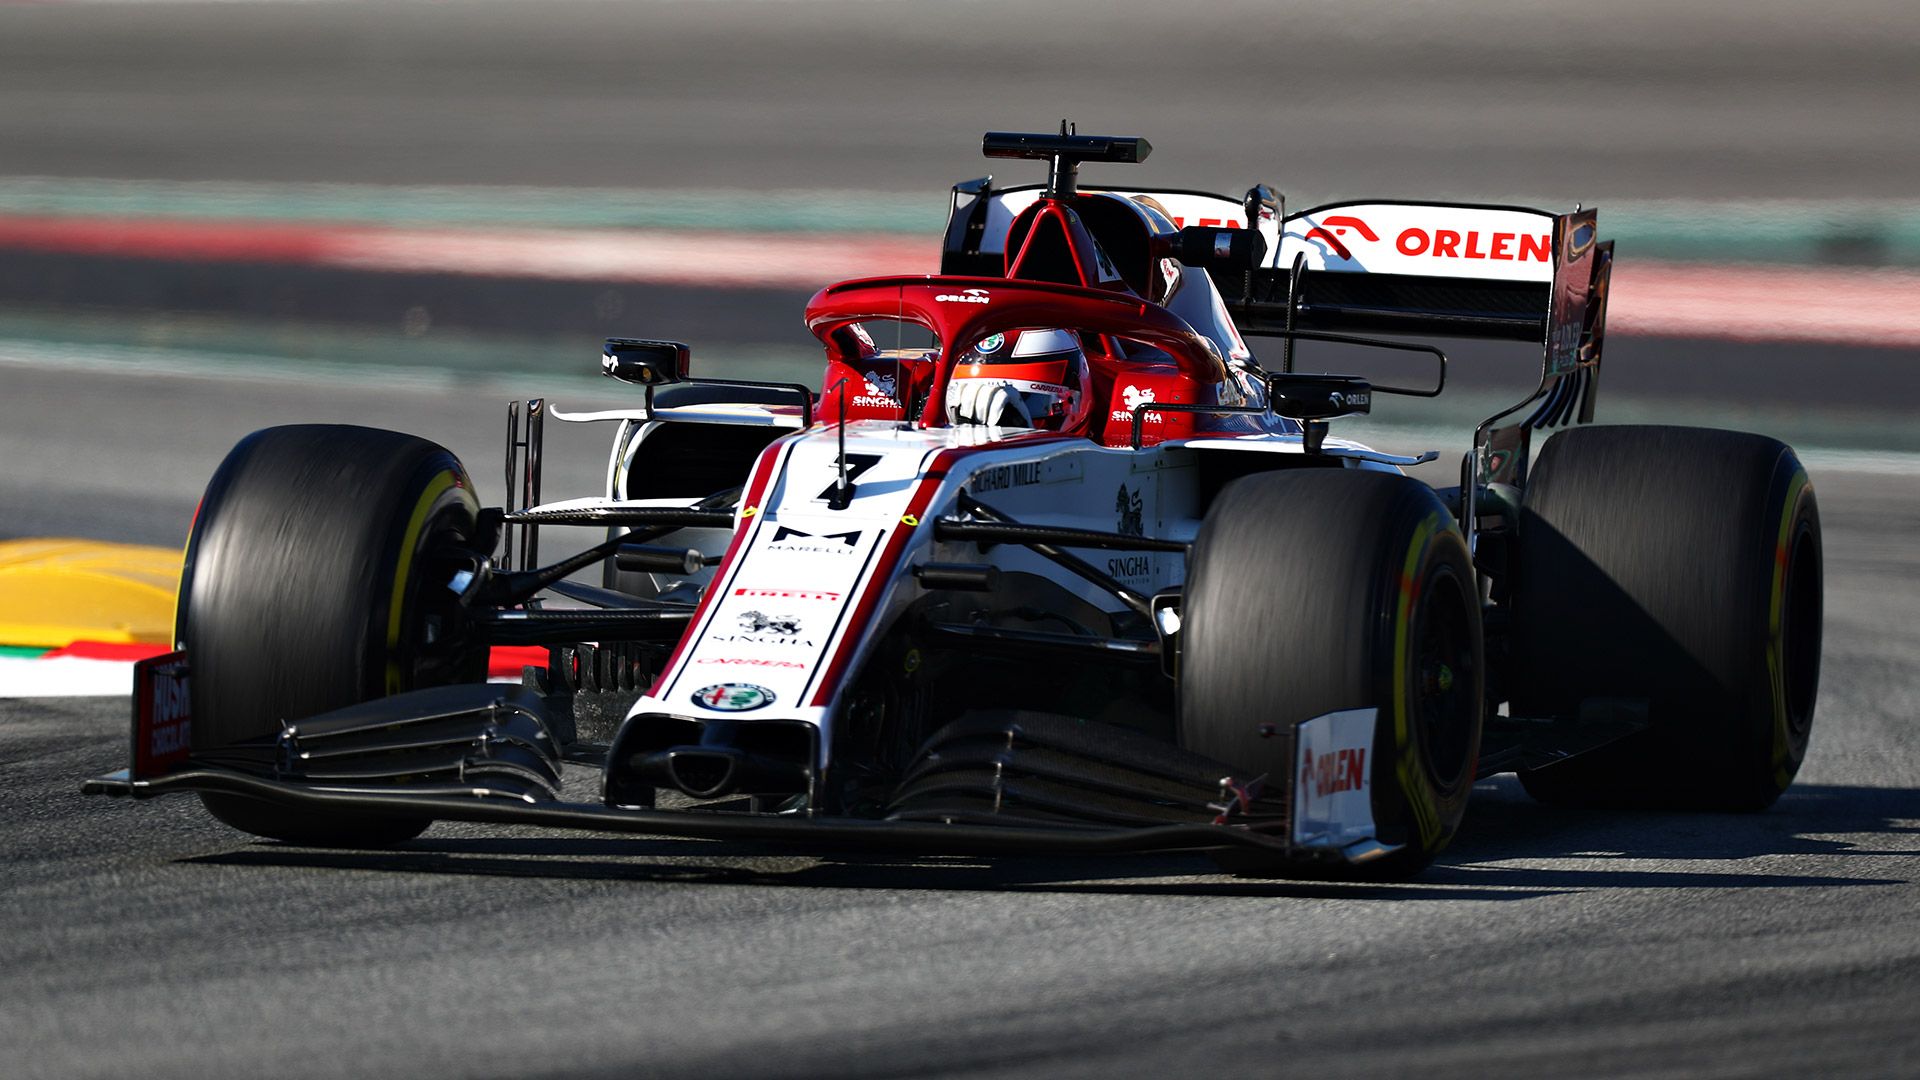 Kimi Raikkonen's F1 Future in Doubt as Sergio Perez Reportedly in Talks With Alfa Romeo